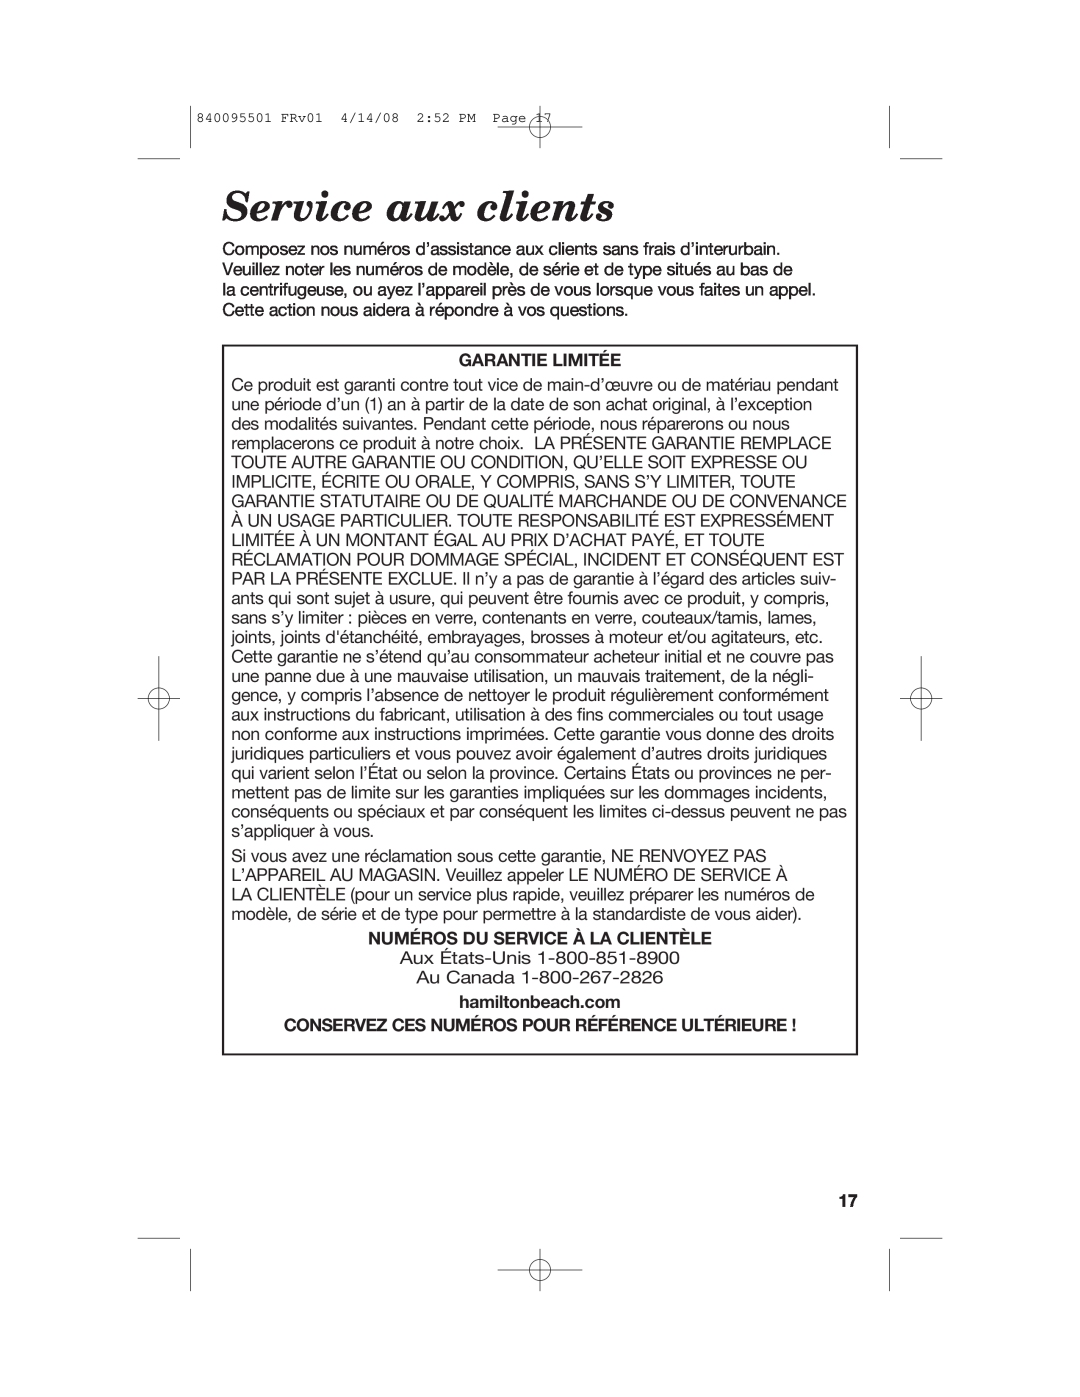 Hamilton Beach 840095501 manual Service aux clients, Garantie Limitée, Numéros Du Service À La Clientèle 